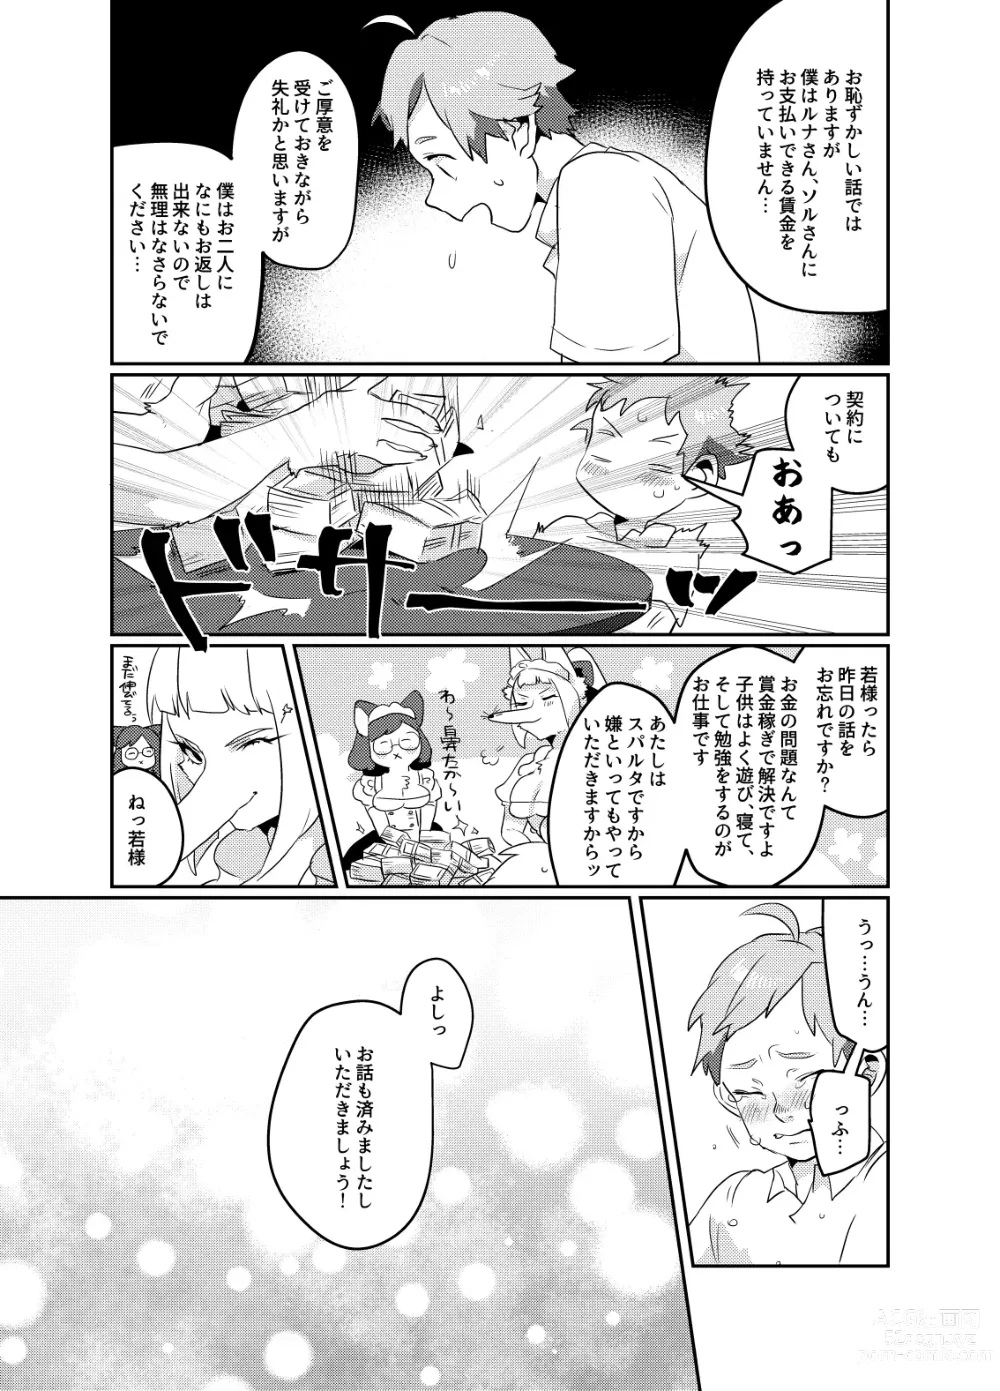 Page 23 of doujinshi Meido inHEAVEN